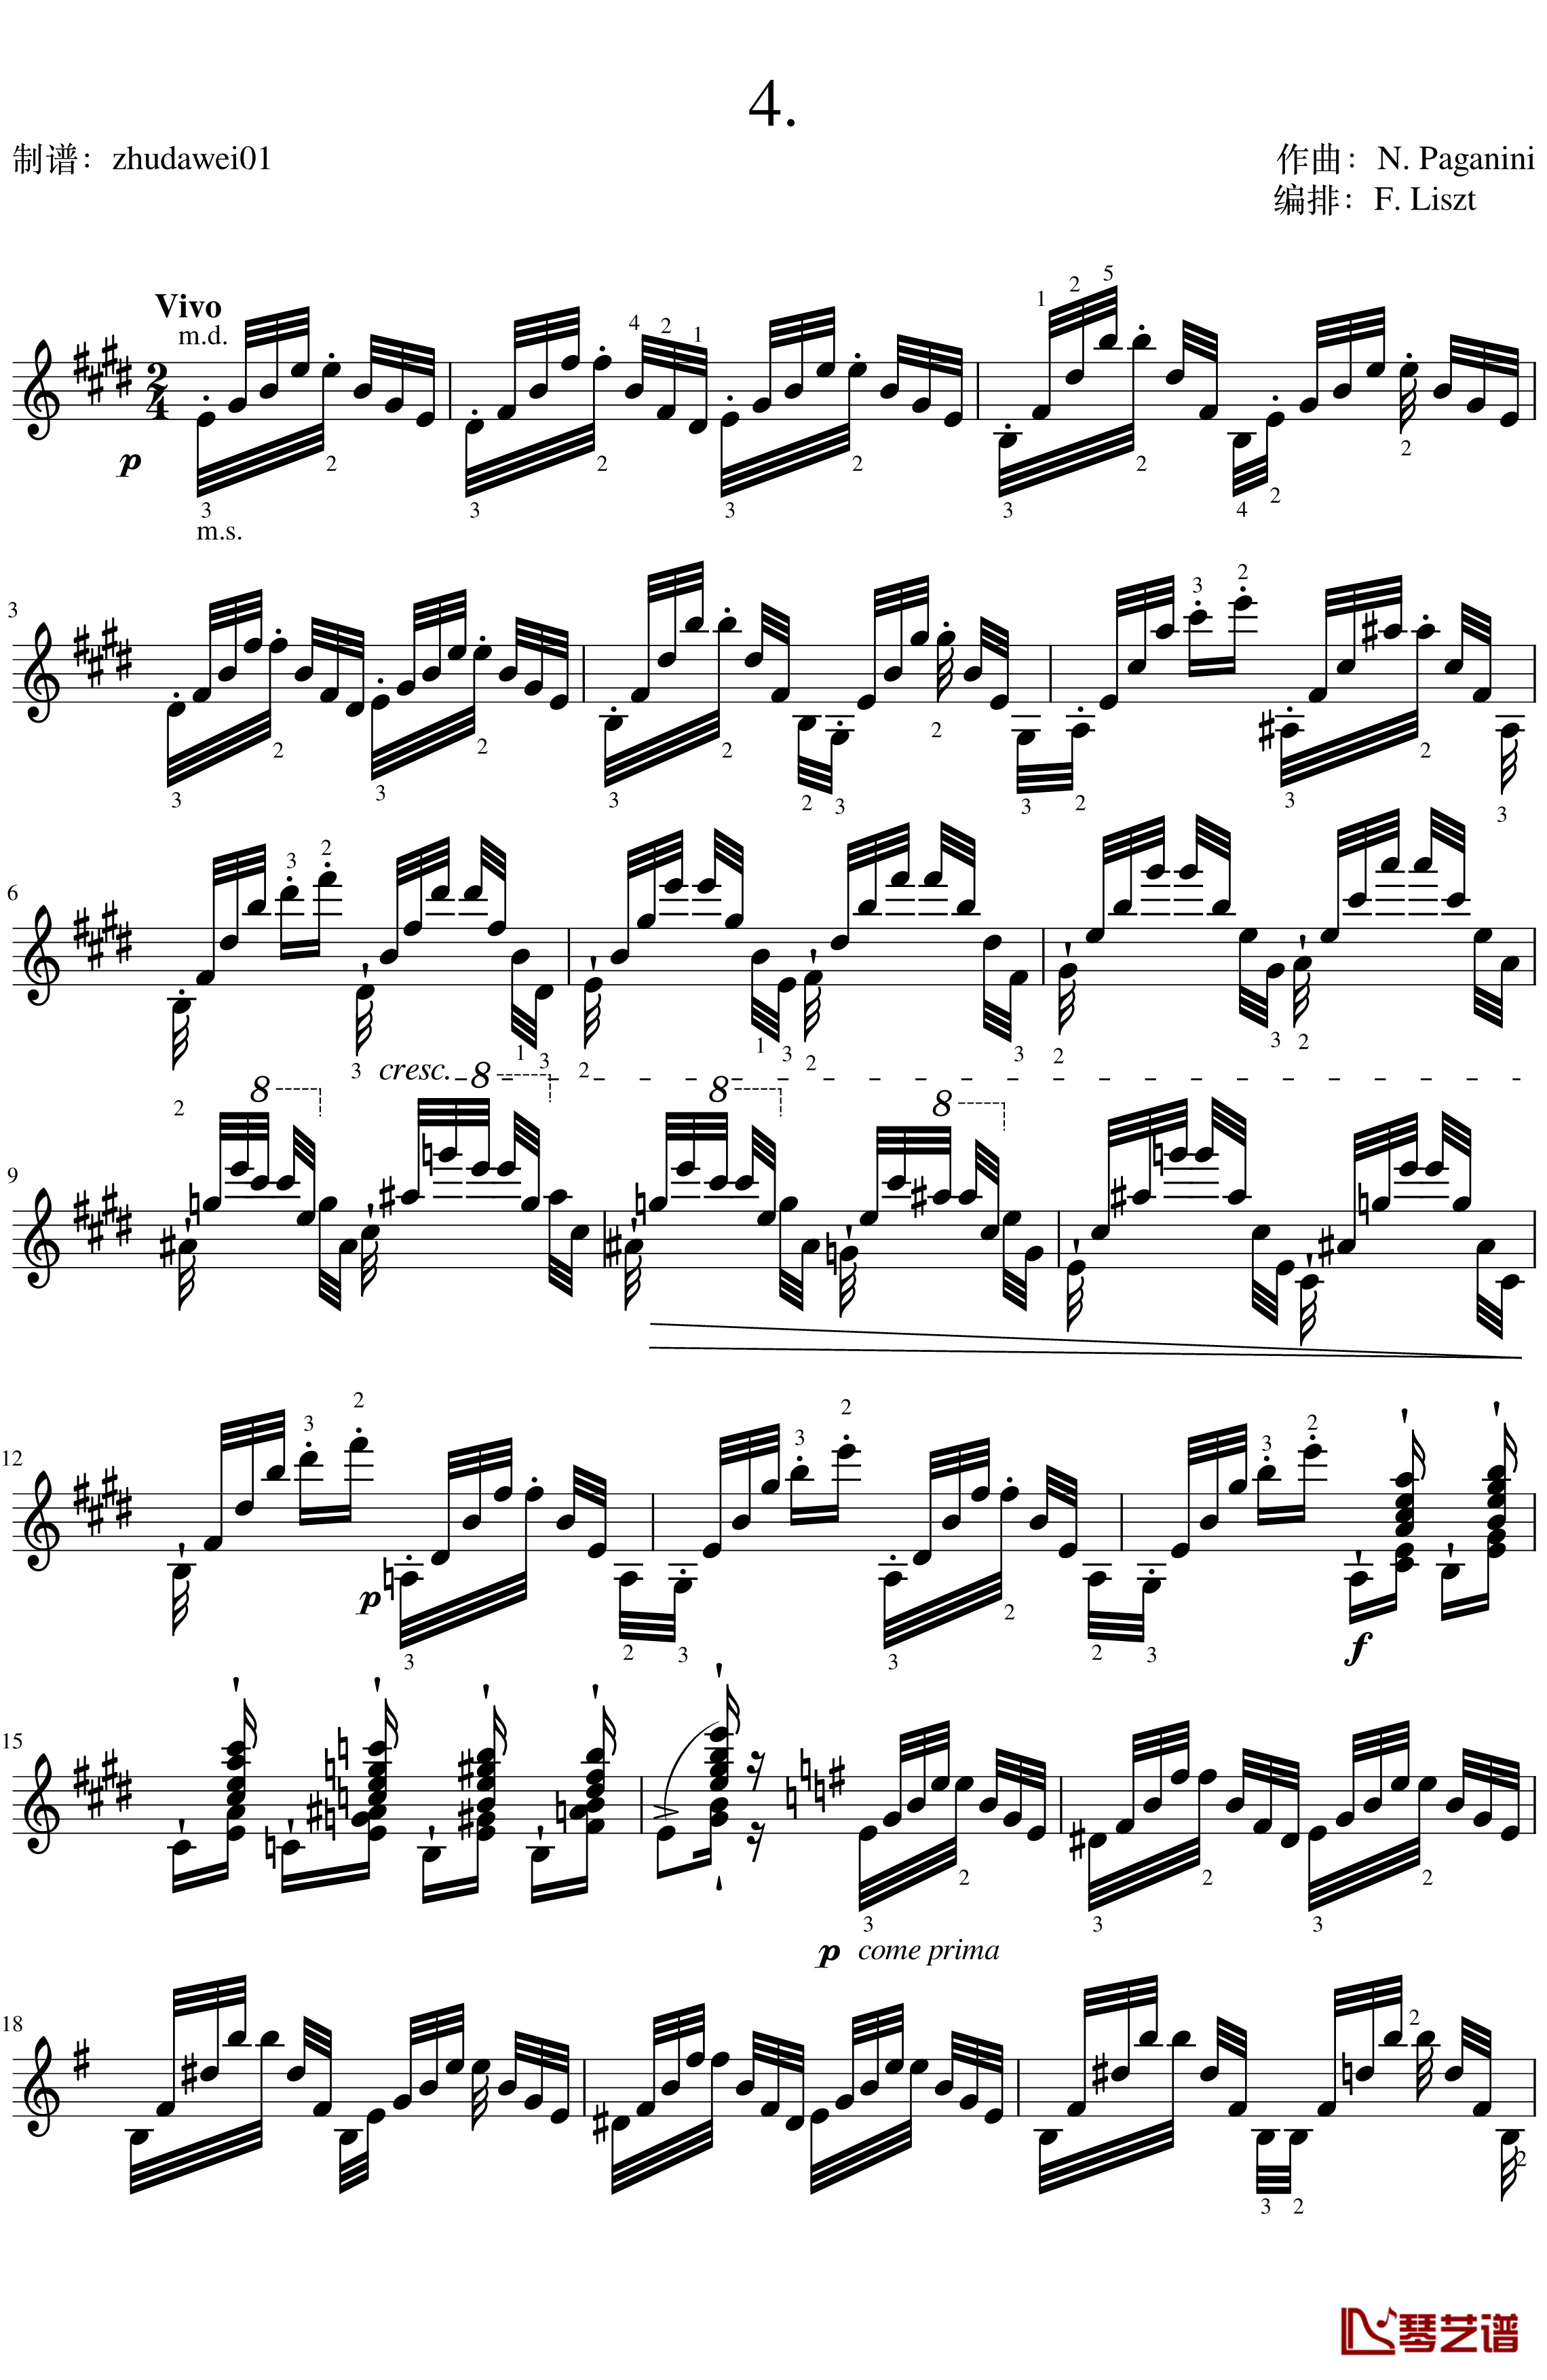 帕格尼尼大练习曲4钢琴谱-李斯特1